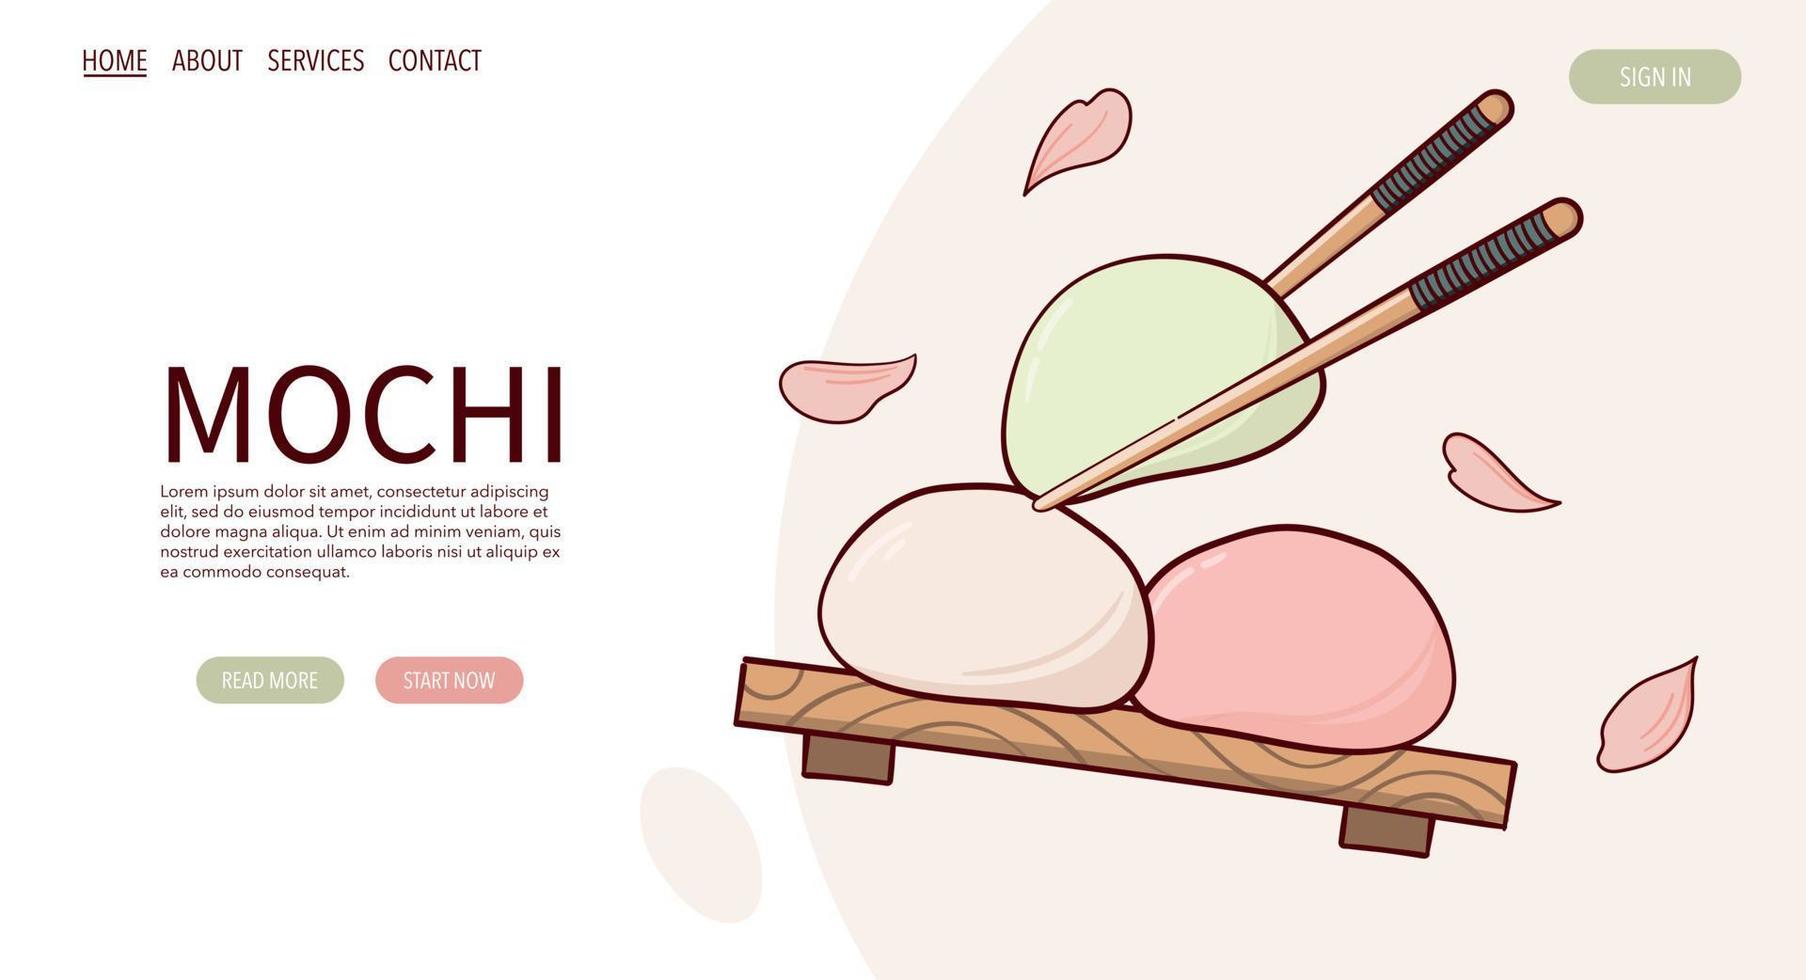 webb sida dra fjapan tradition ljuv mochi vektor illustration. japansk asiatisk traditionell mat, matlagning, meny begrepp. baner, hemsida, reklam i klotter tecknad serie stil.